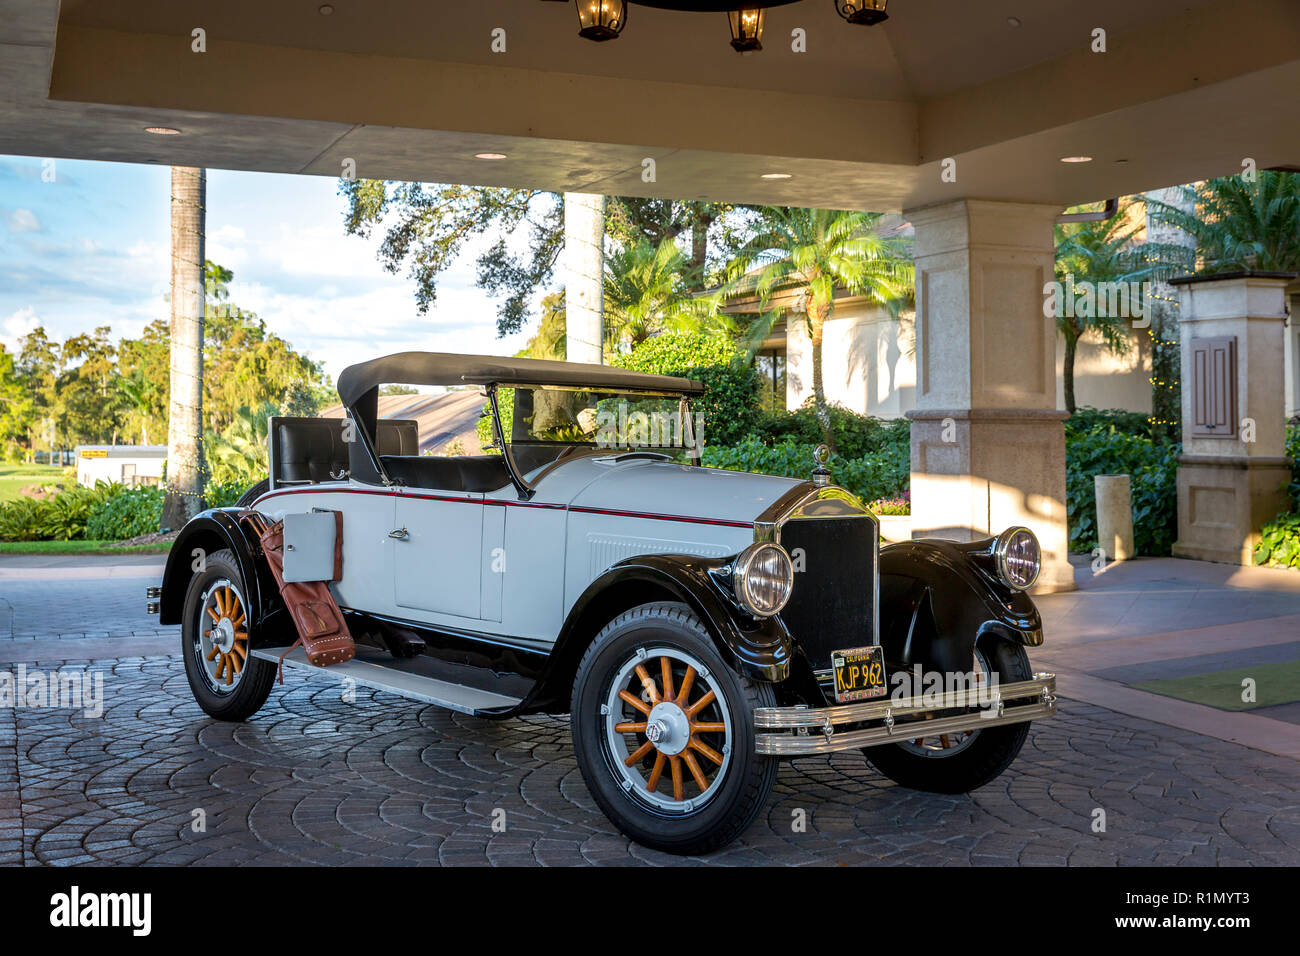 1926 Ford Modello T Roadster a quaglie Creek Country Club, Naples, Florida, Stati Uniti d'America Foto Stock